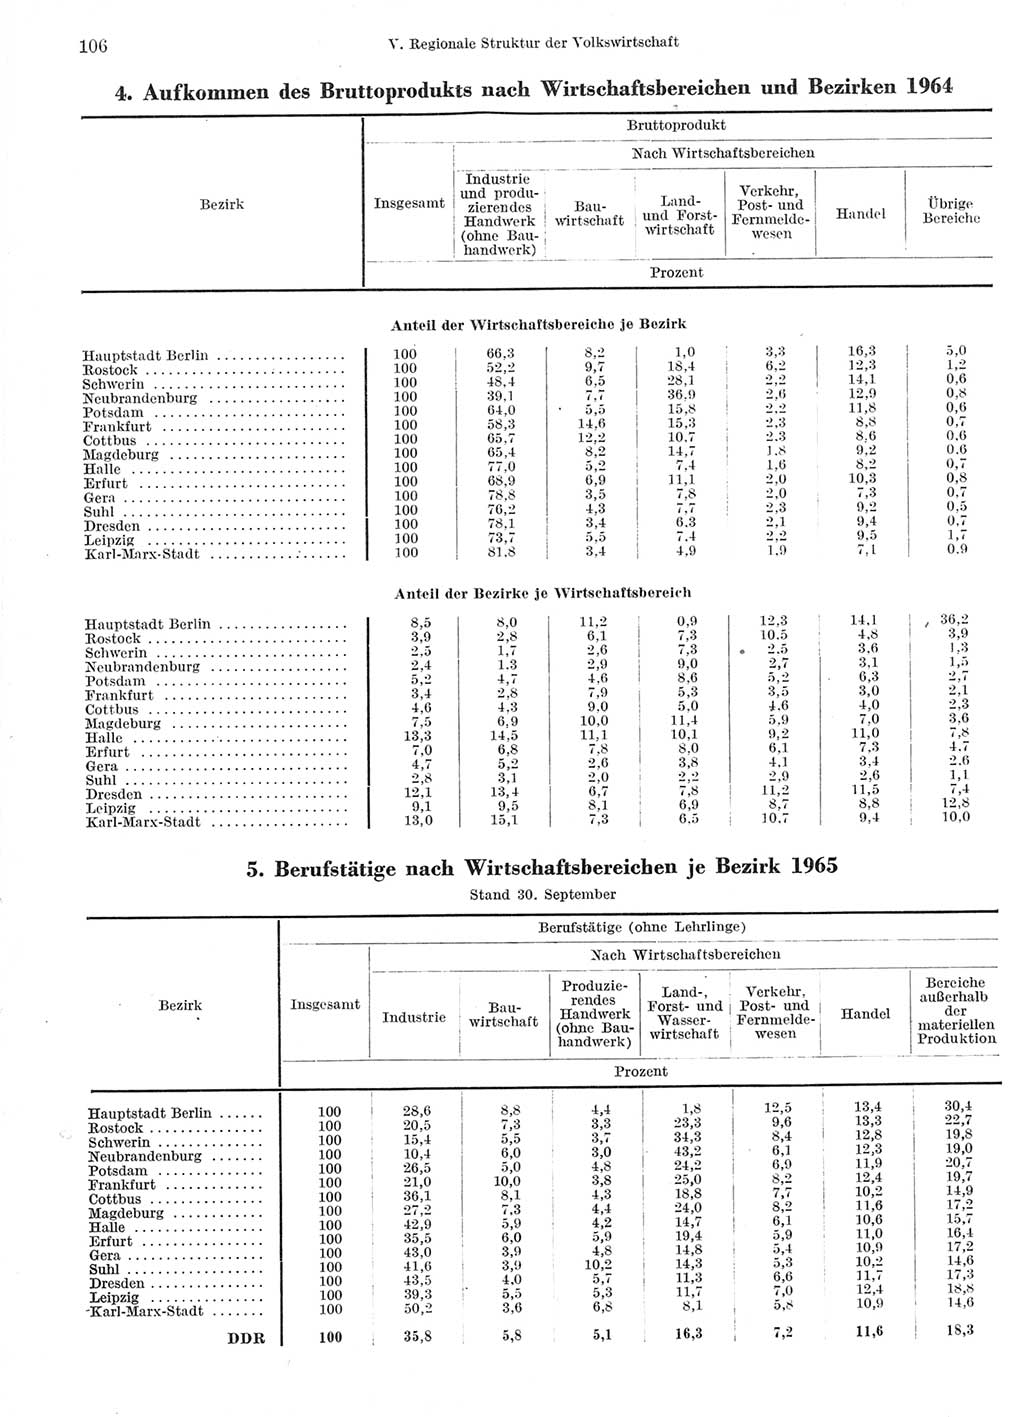 Statistisches Jahrbuch der Deutschen Demokratischen Republik (DDR) 1966, Seite 106 (Stat. Jb. DDR 1966, S. 106)